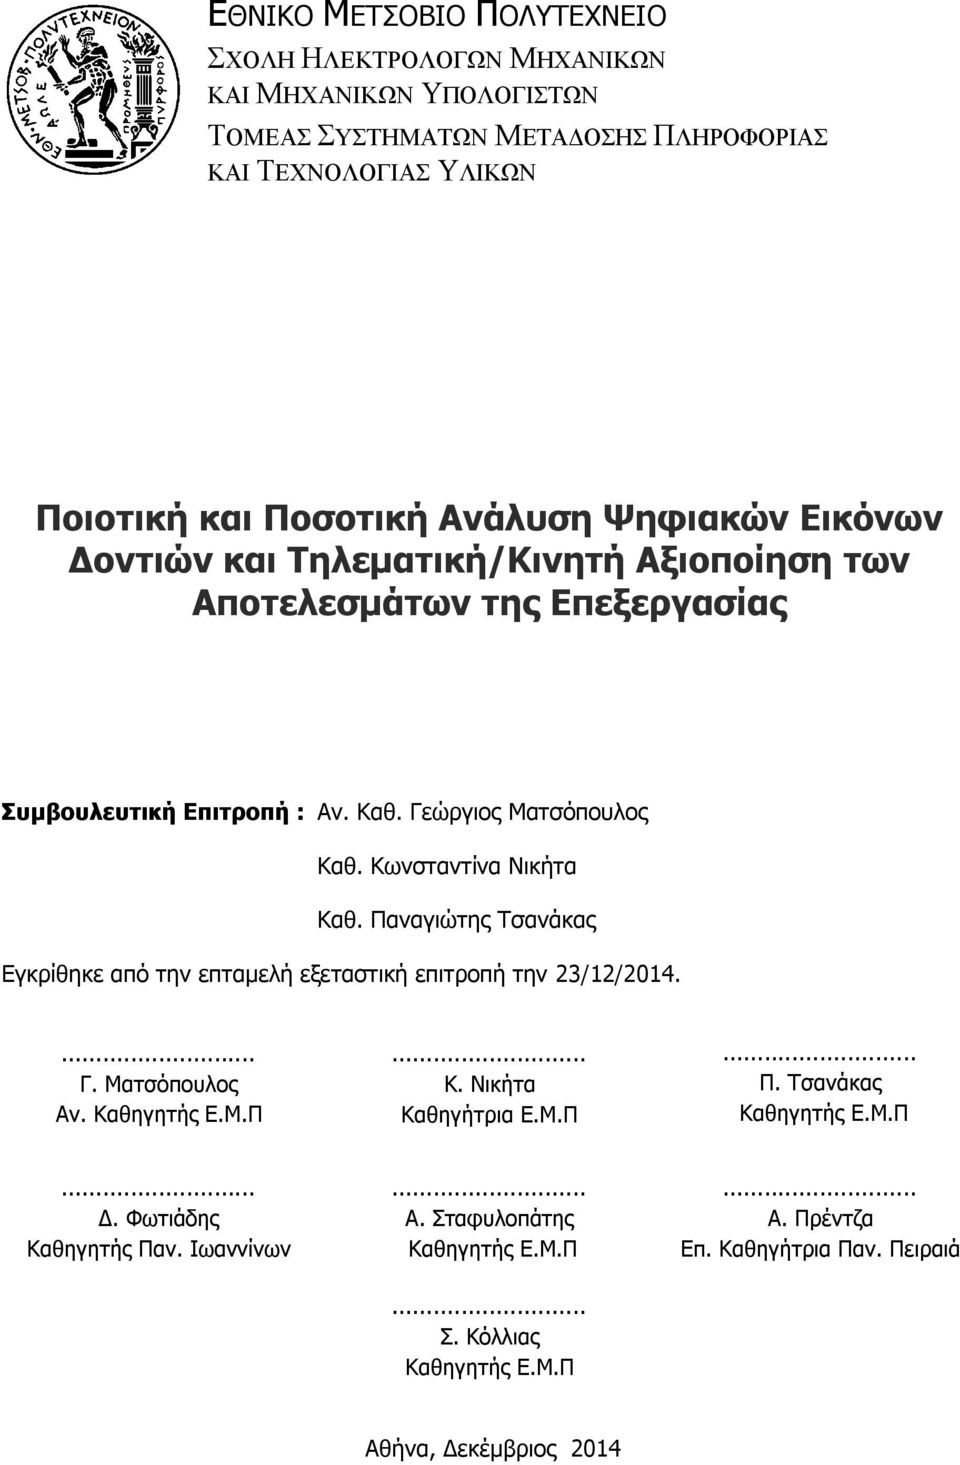 Παναγιώτης Τσανάκας Εγκρίθηκε από την επταμελή εξεταστική επιτροπή την 23/12/2014.... Γ. Ματσόπουλος Αν. Καθηγητής Ε.Μ.Π... Κ. Νικήτα Καθηγήτρια Ε.Μ.Π... Π.